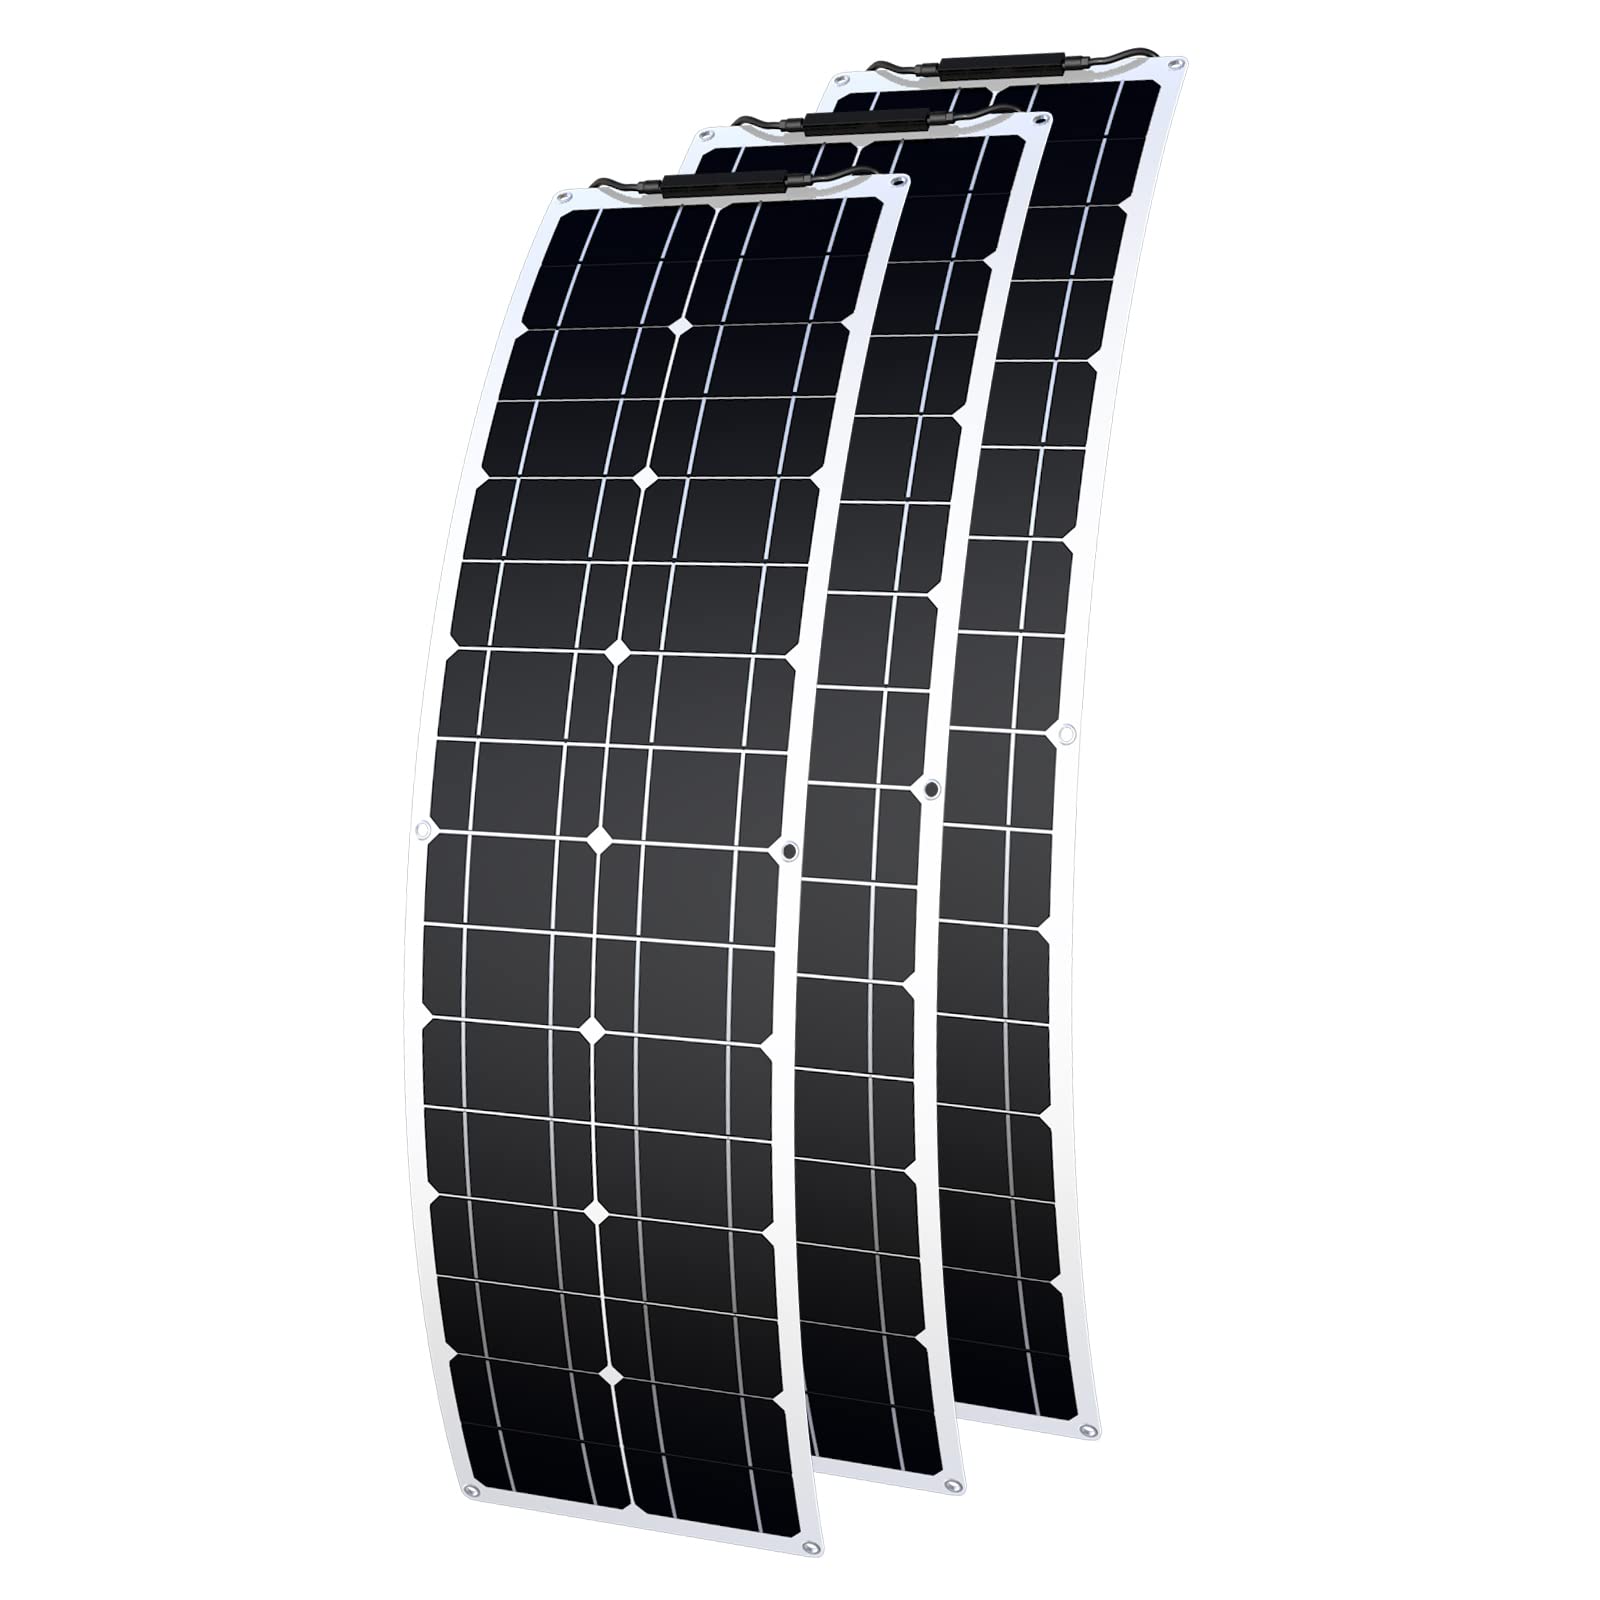 Flexibles Solarpanel 50W 12V Flexibles Solarpanel Monokristallines 150w Solarladegerät Wasserdichtes und ultradünnes Solarmodul für Wohnmobile, Boote, Häuser und unebene Oberflächen (50 Watt*3)